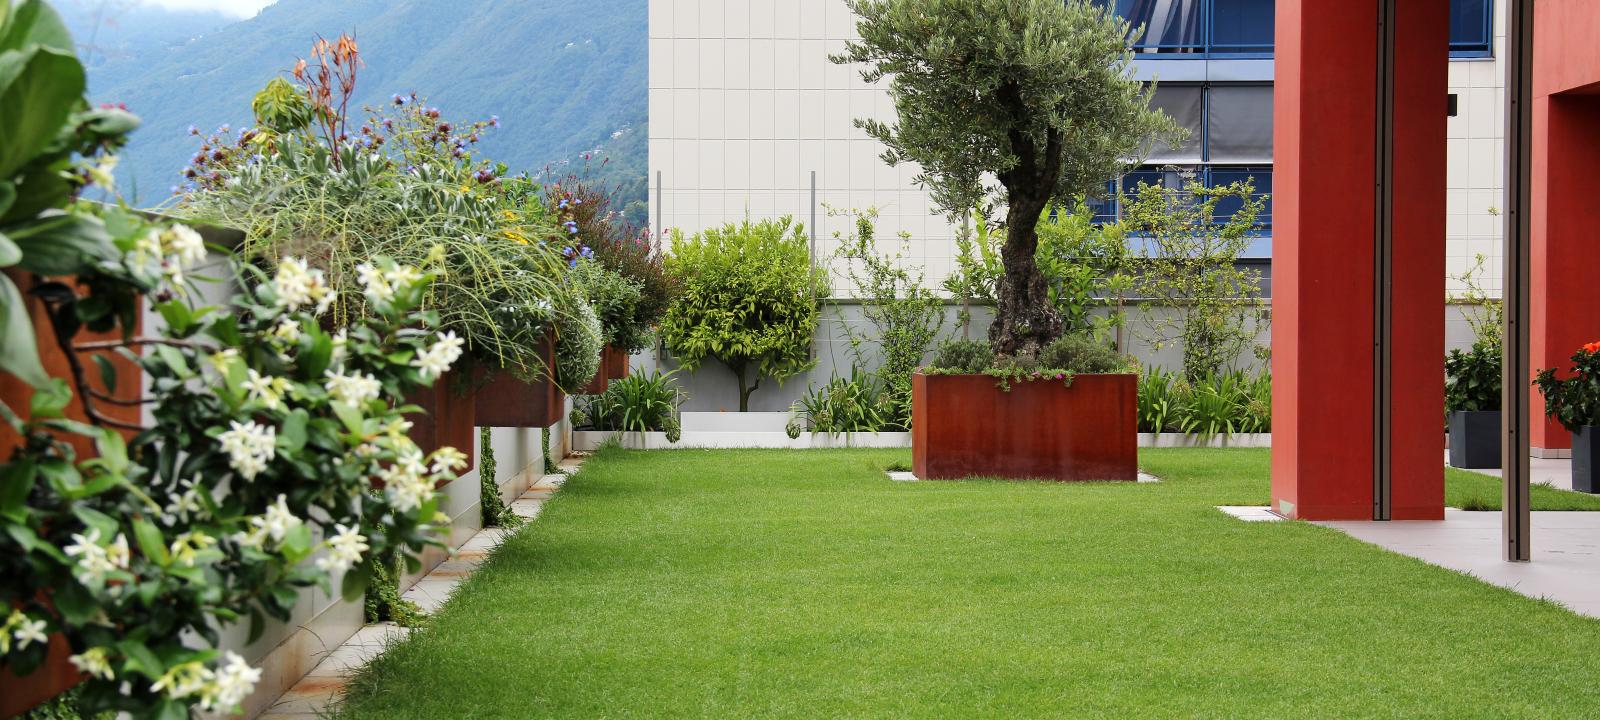 Terrasse jardin avec gazon